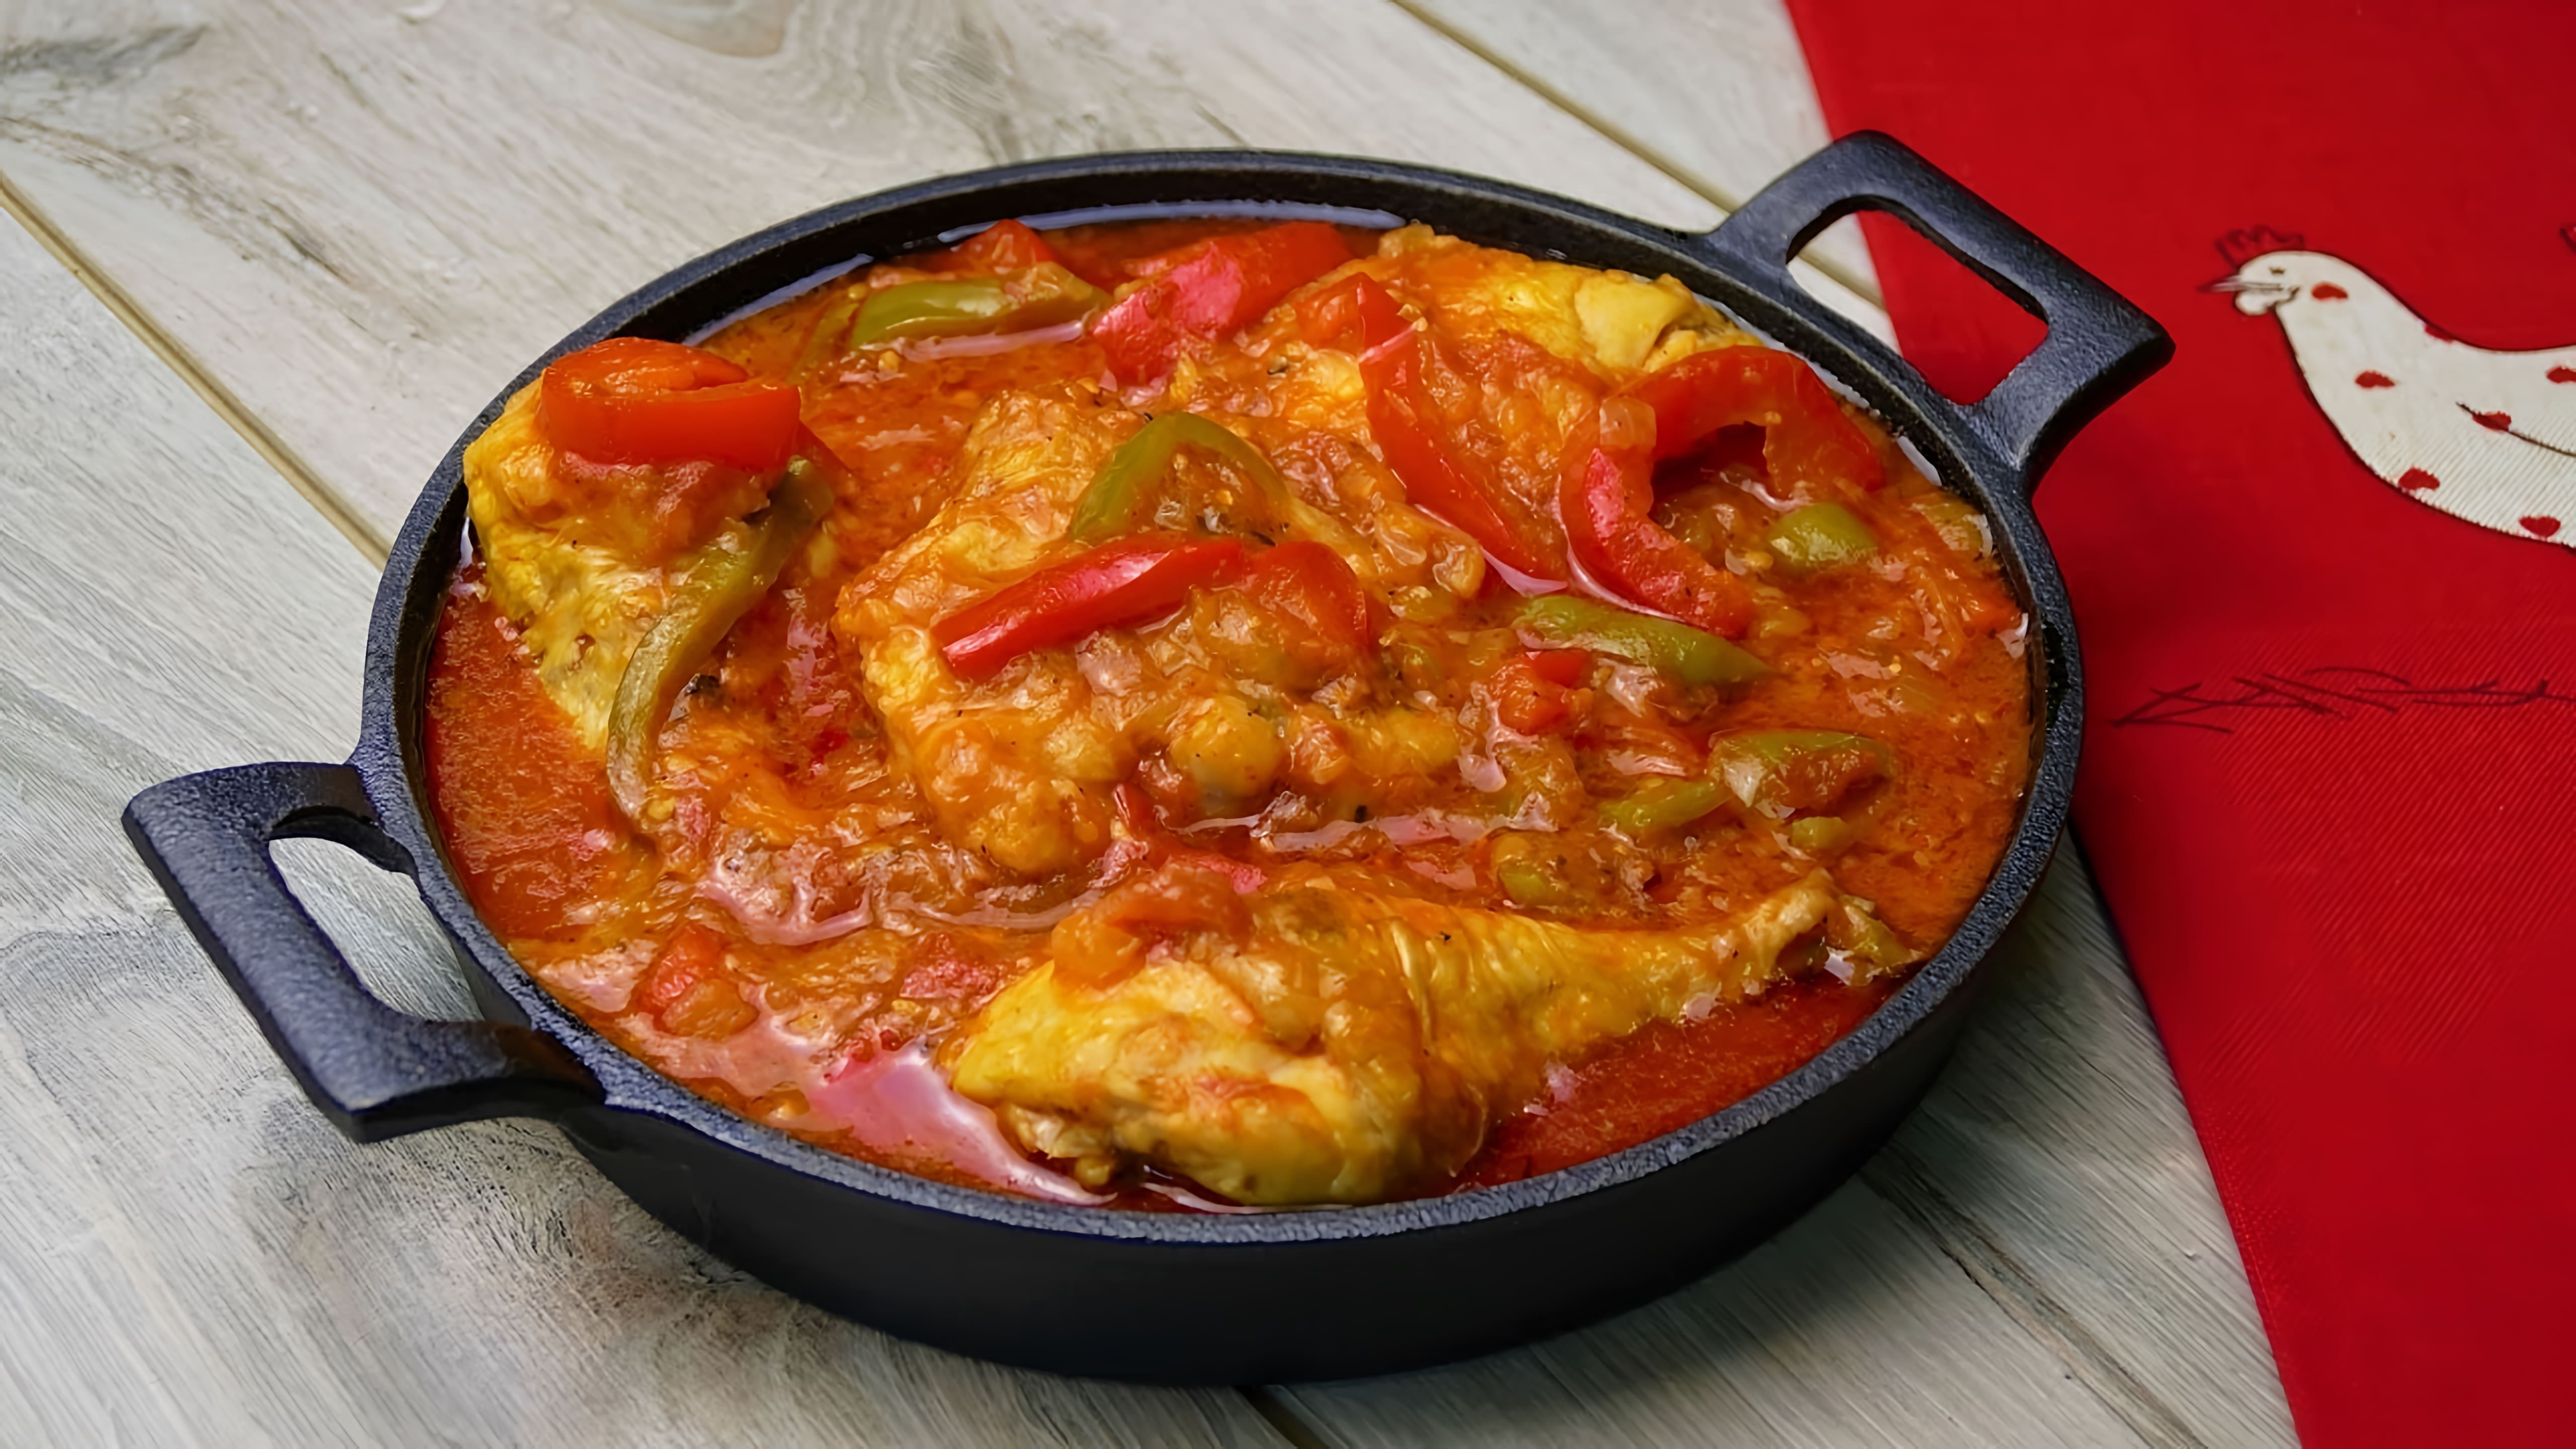 В этом видео демонстрируется процесс приготовления тушеной курицы в томатном соусе по-баскски